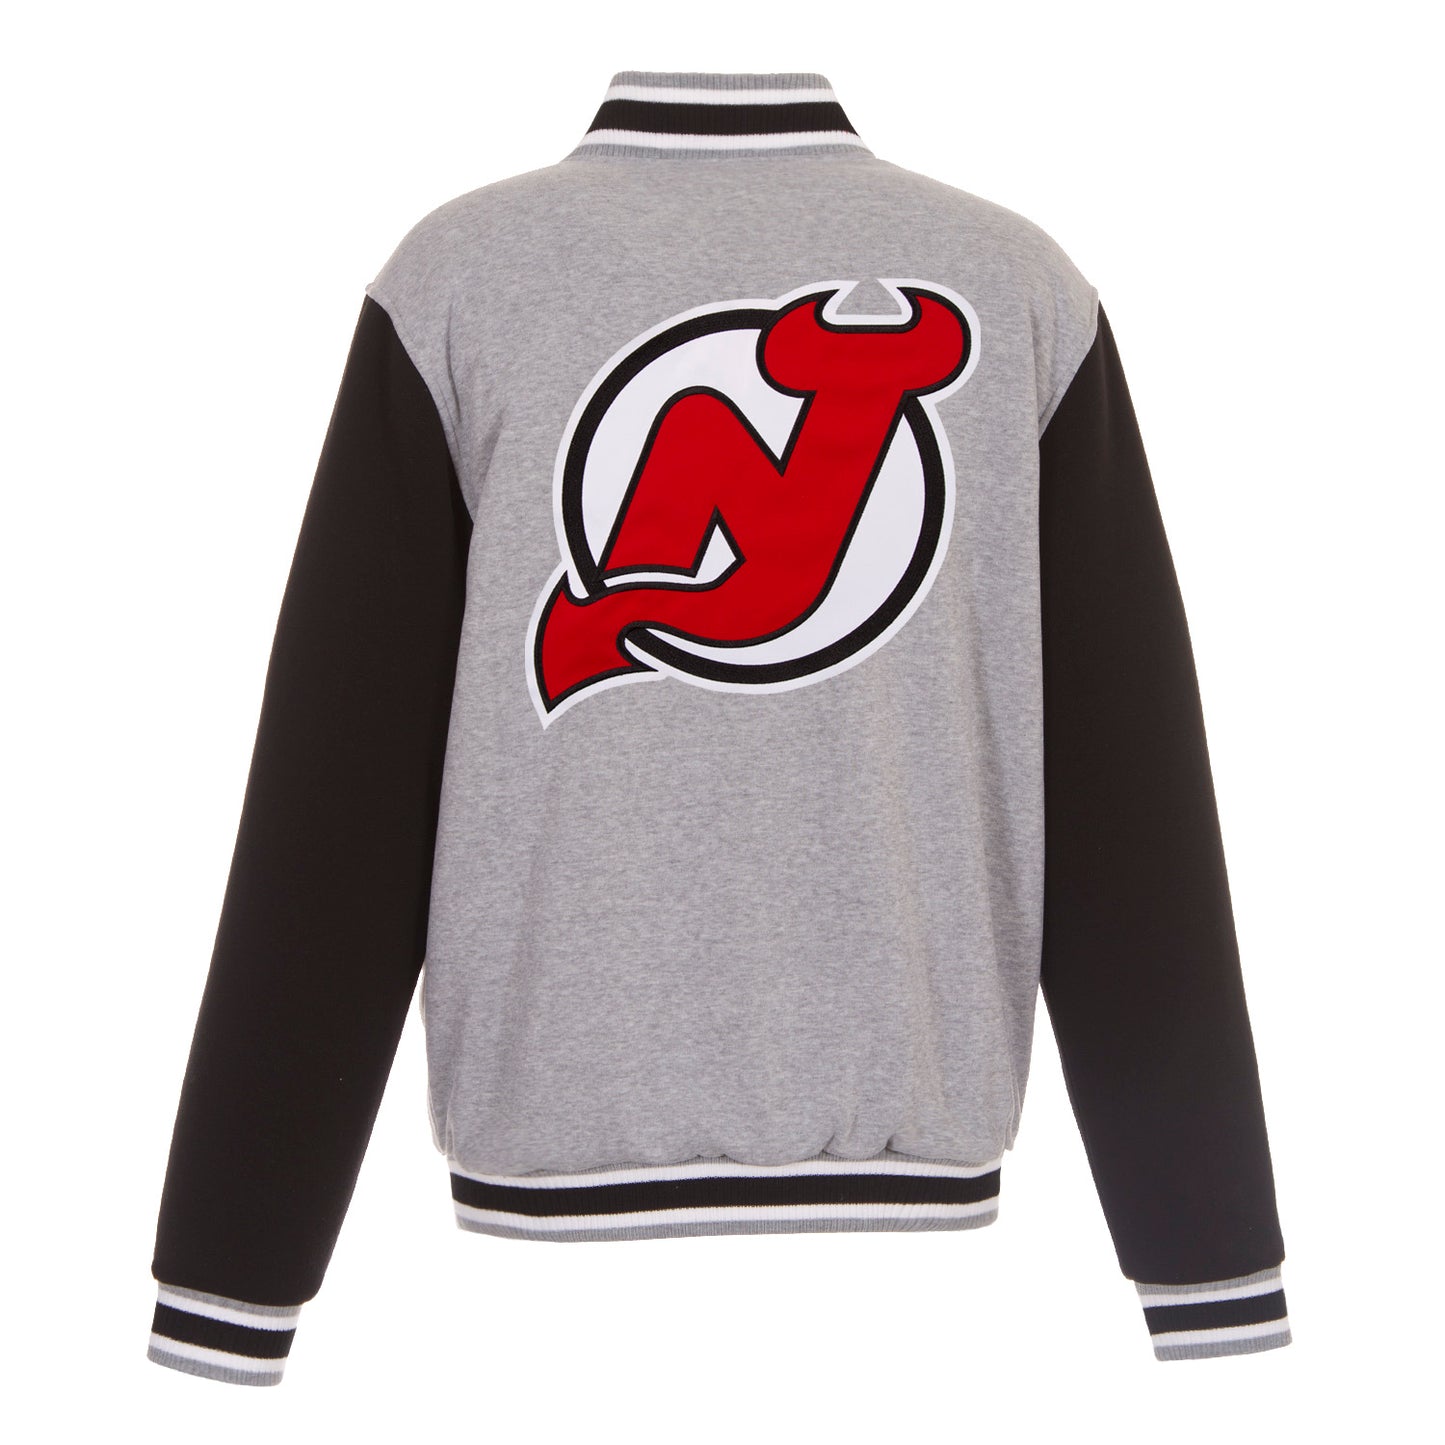 New Jersey Devils Reversible Two-Tone Fleece Jacket